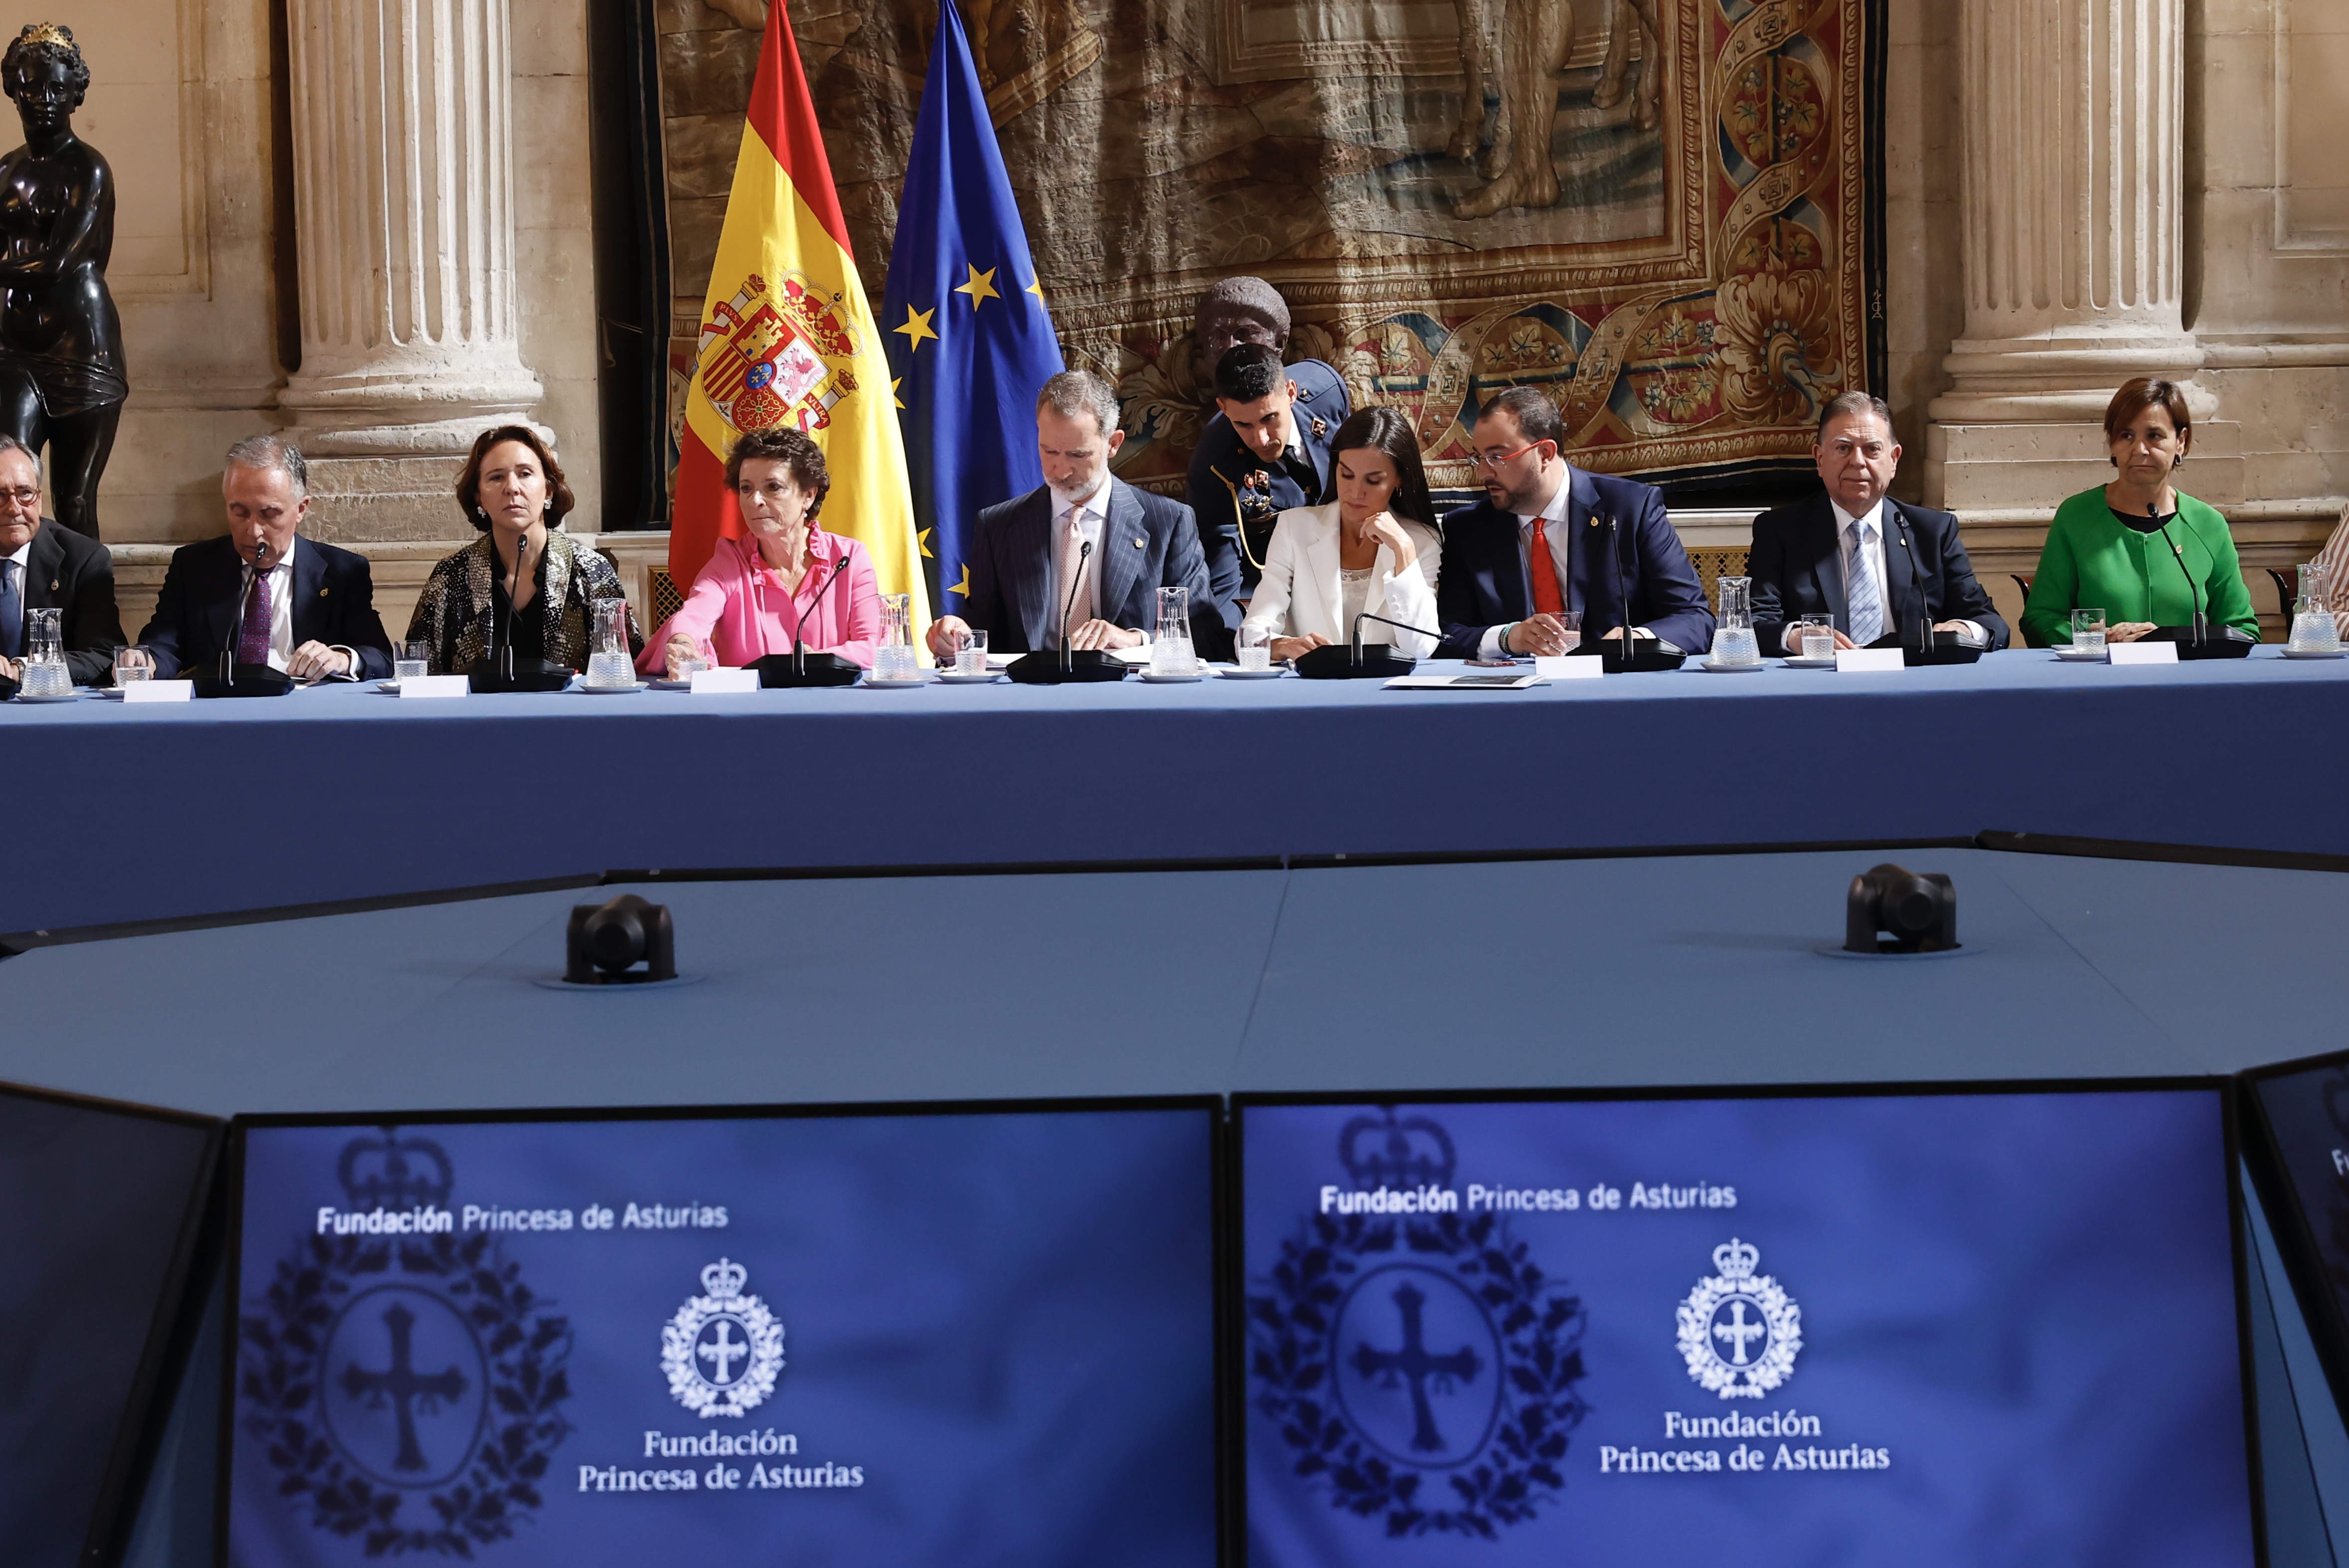 Imagen - Barbón asiste en Madrid al patronato de la Fundación Princesa de Asturias